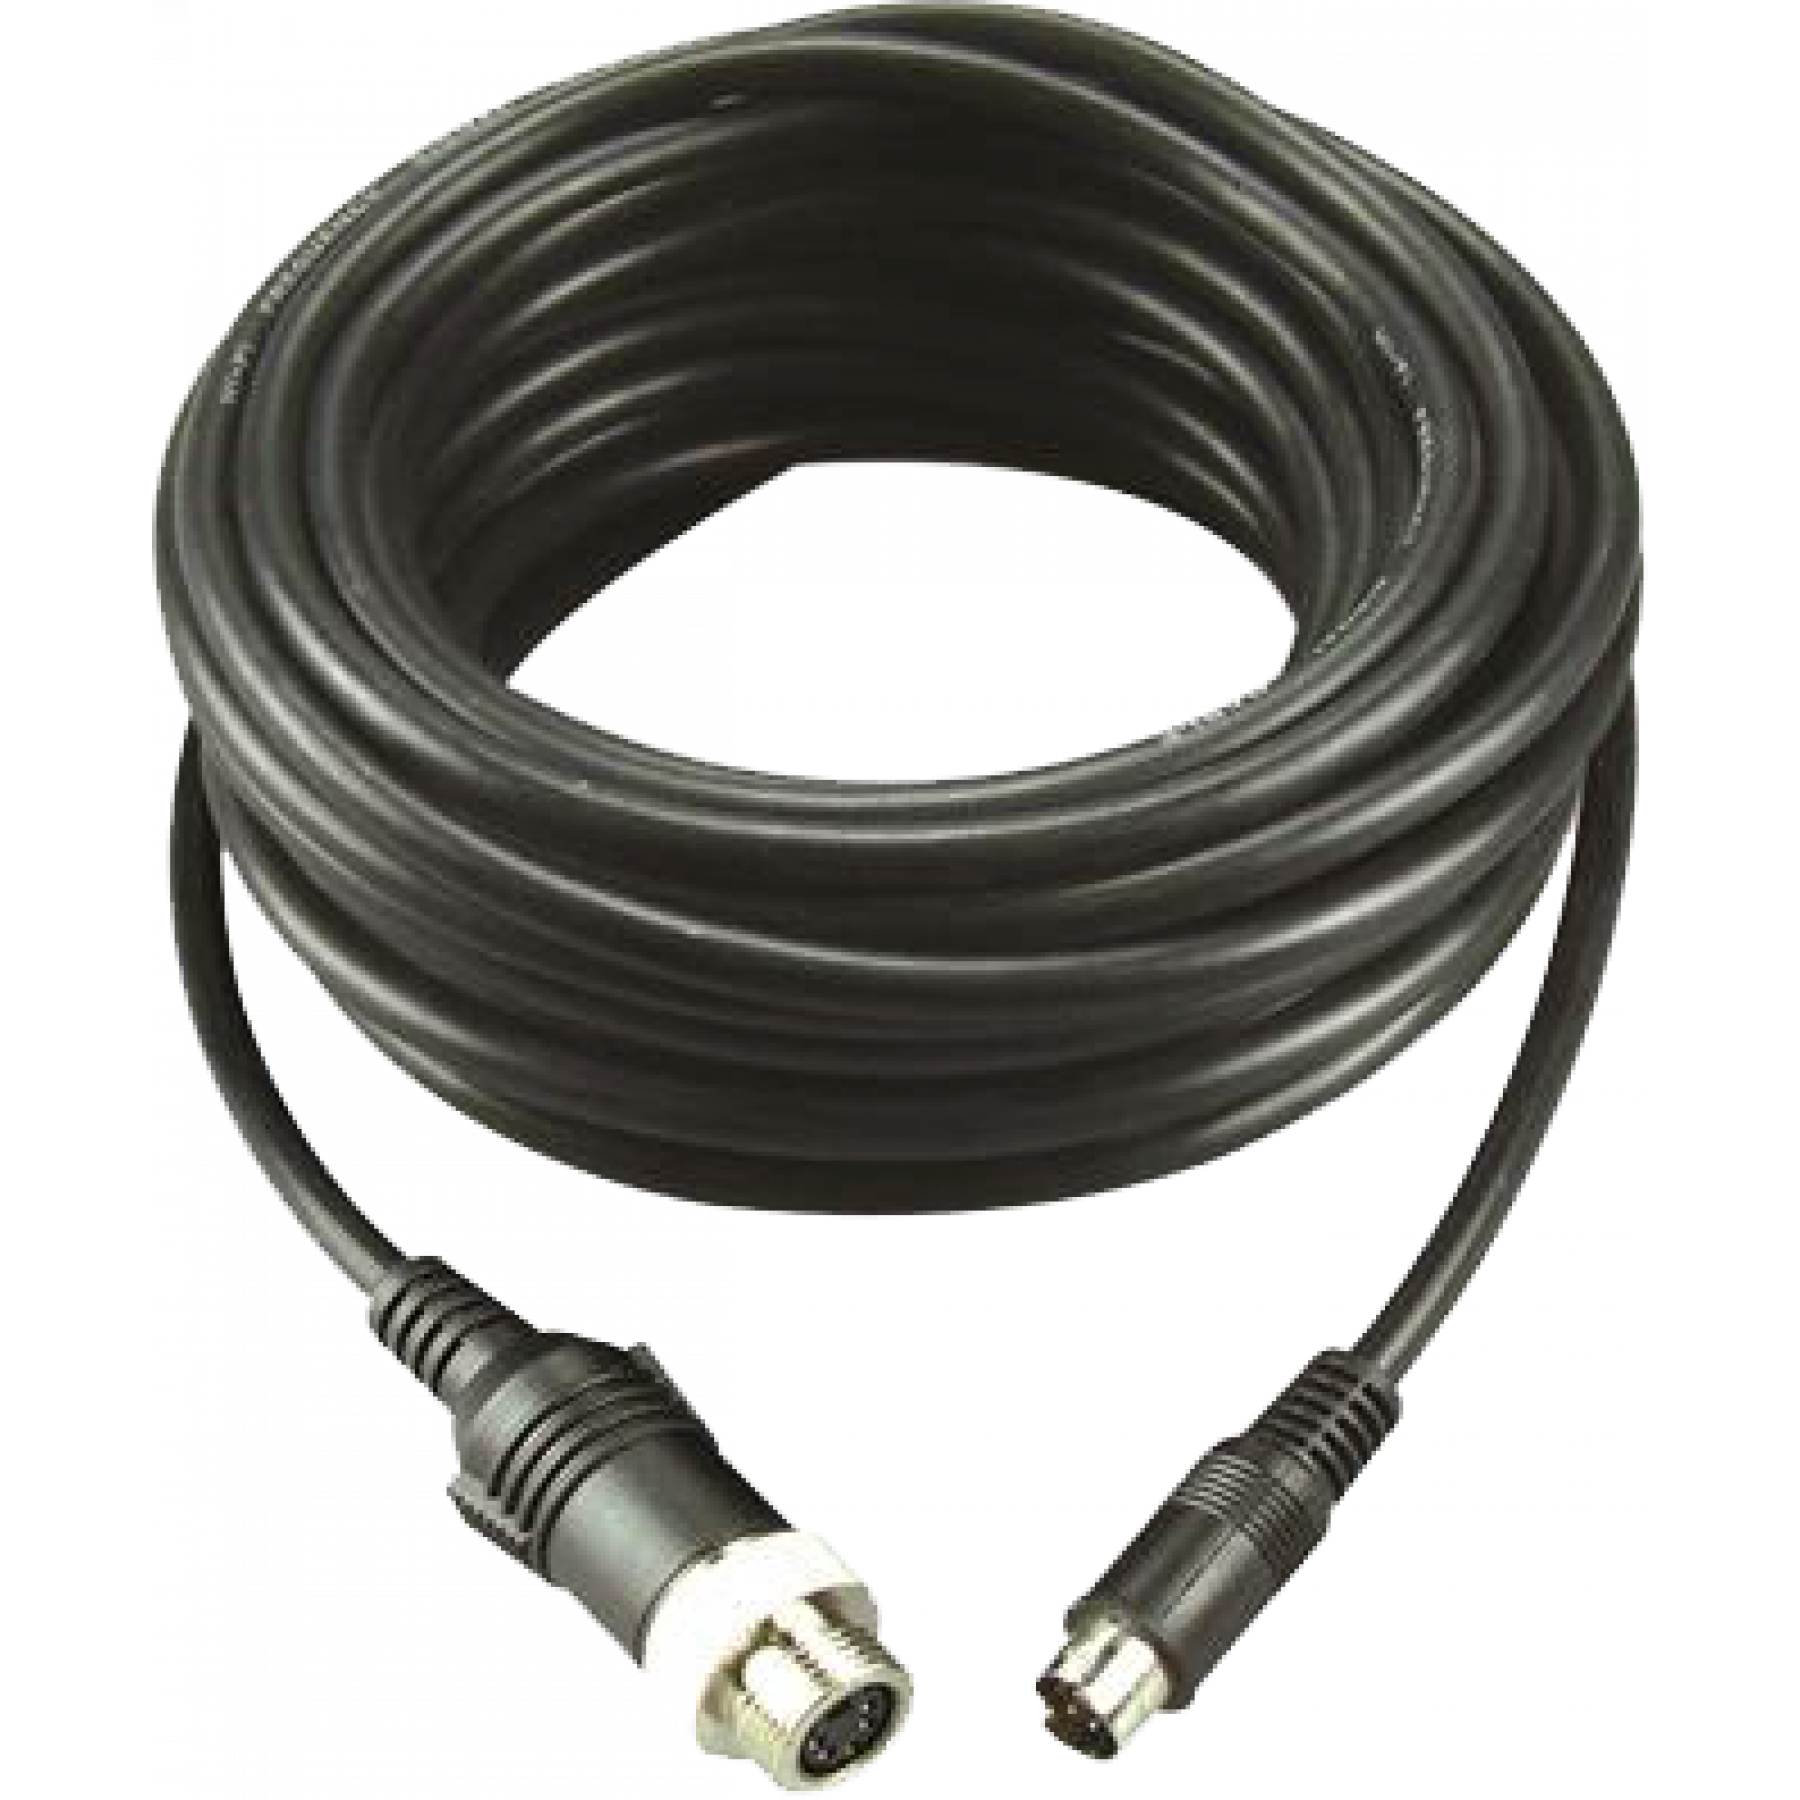 MXN kabel 5 meter